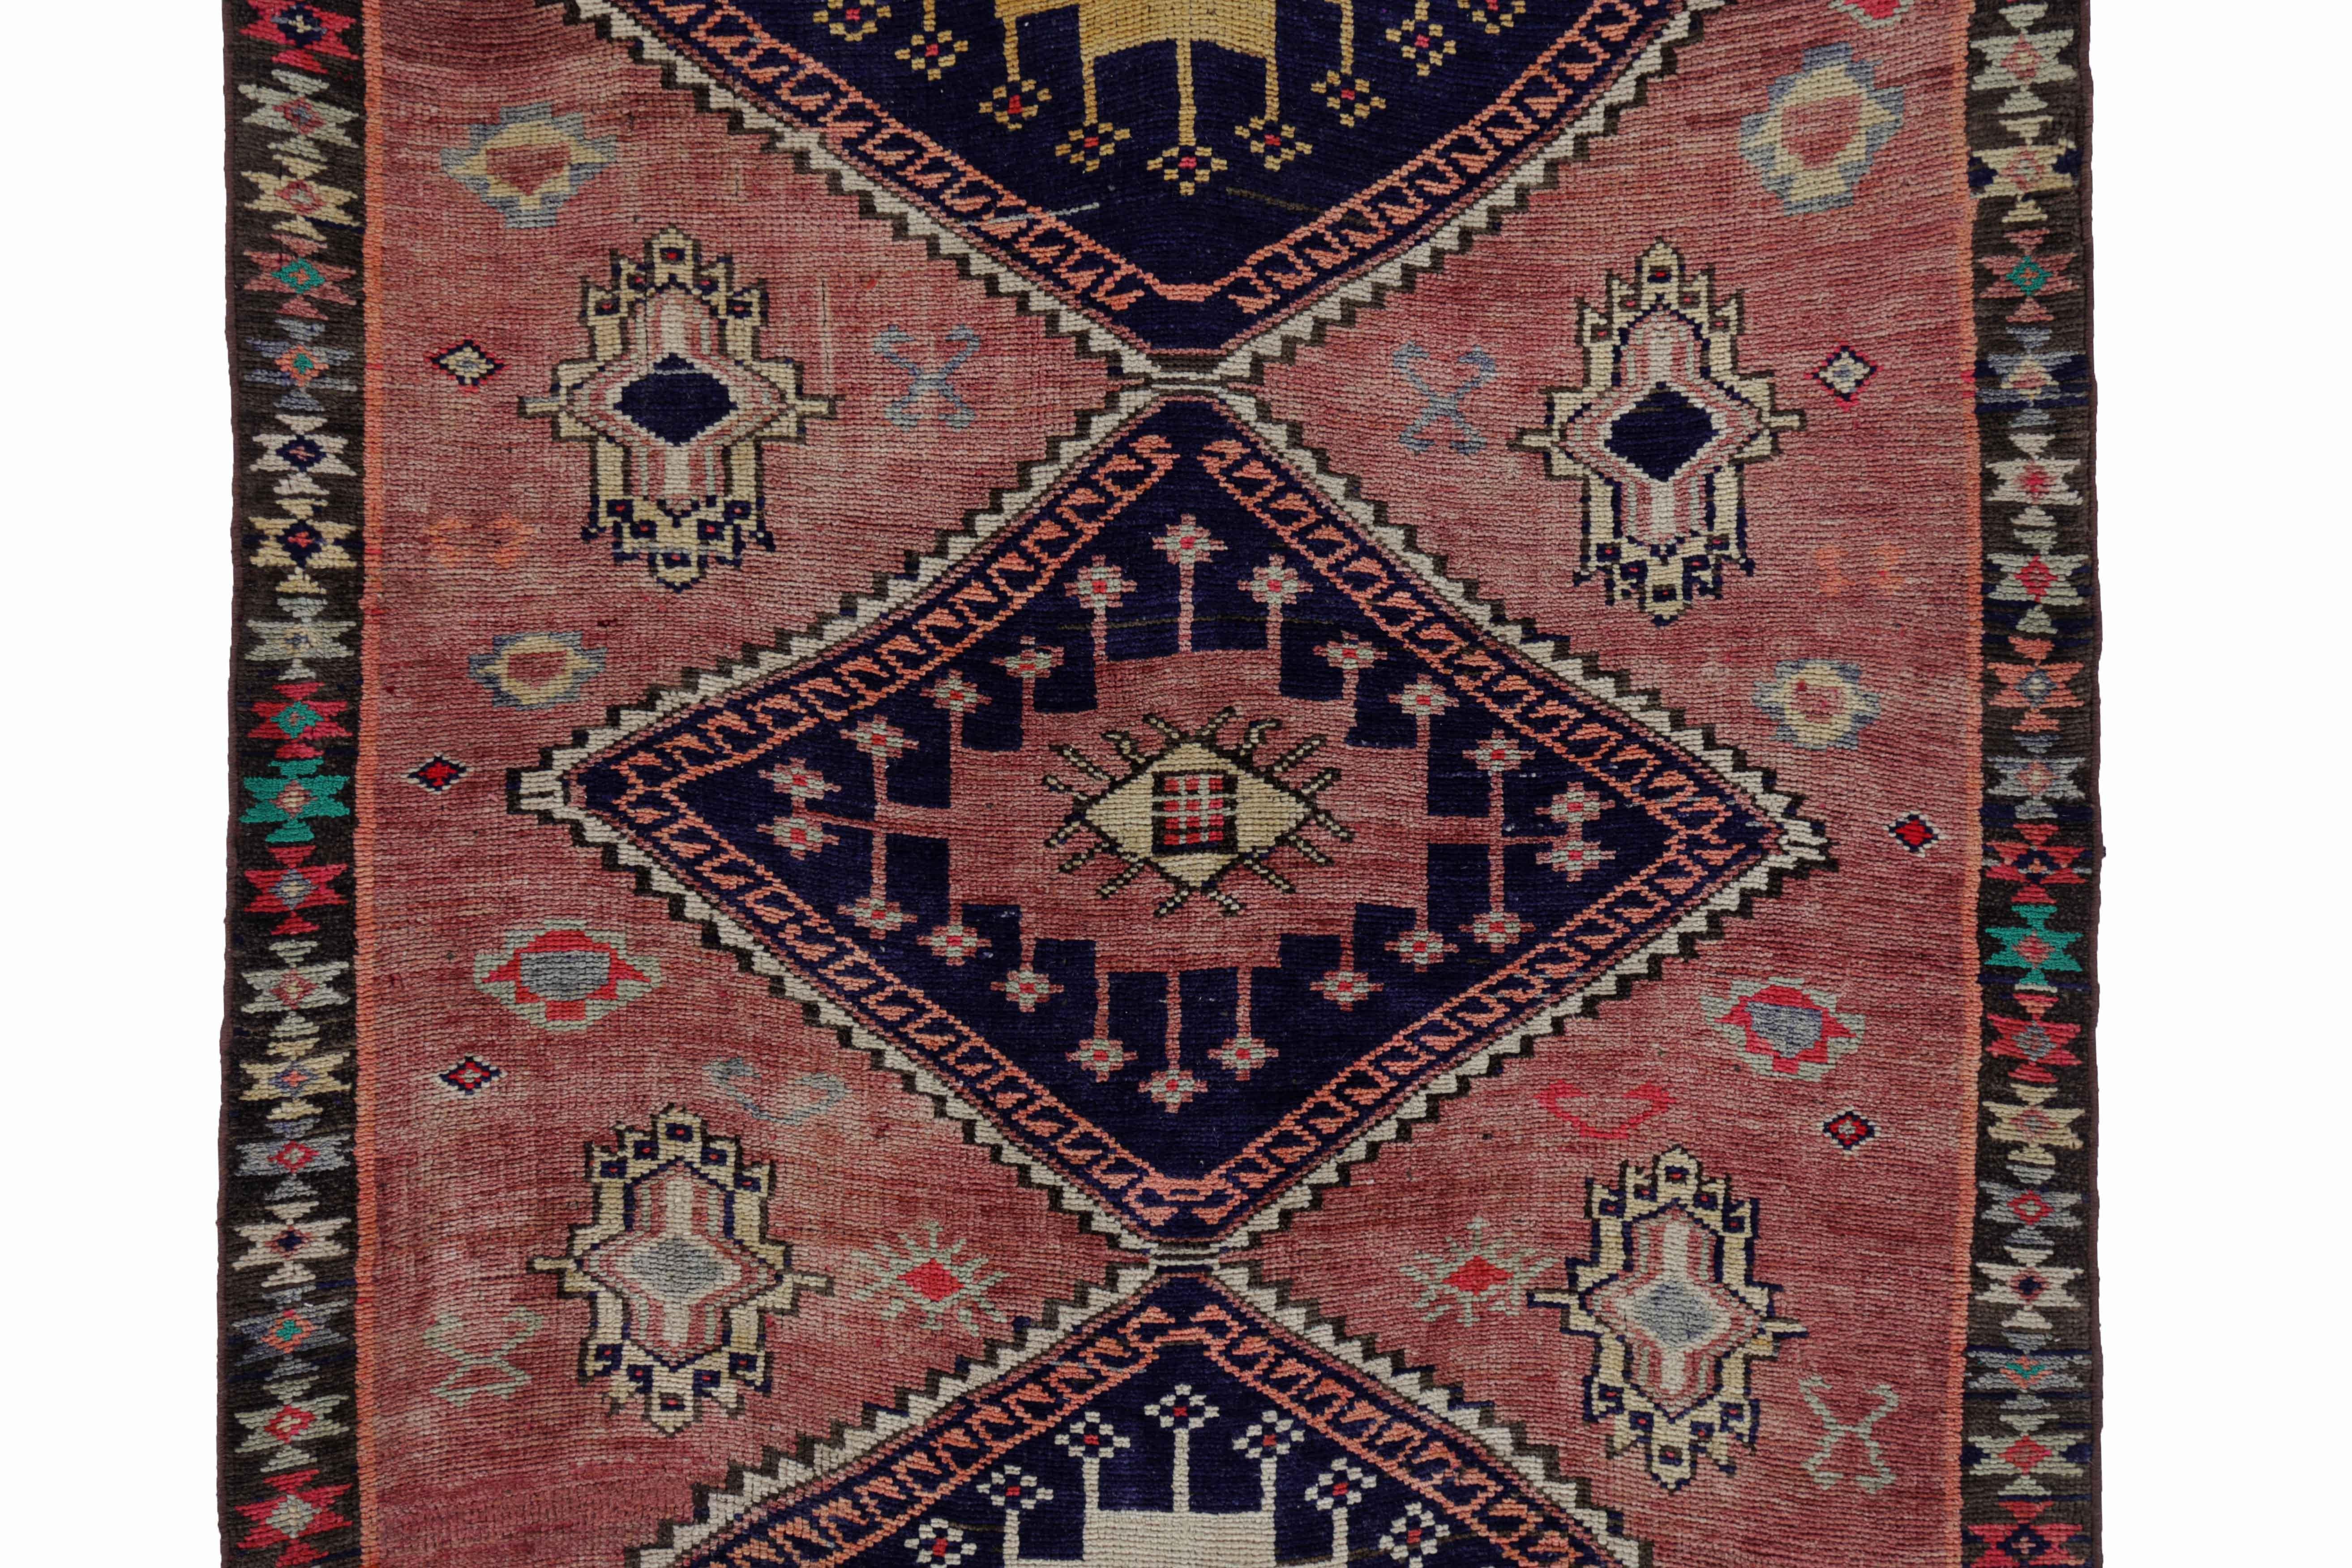 Other Antique Persian Area Rug Azerbaijan Design